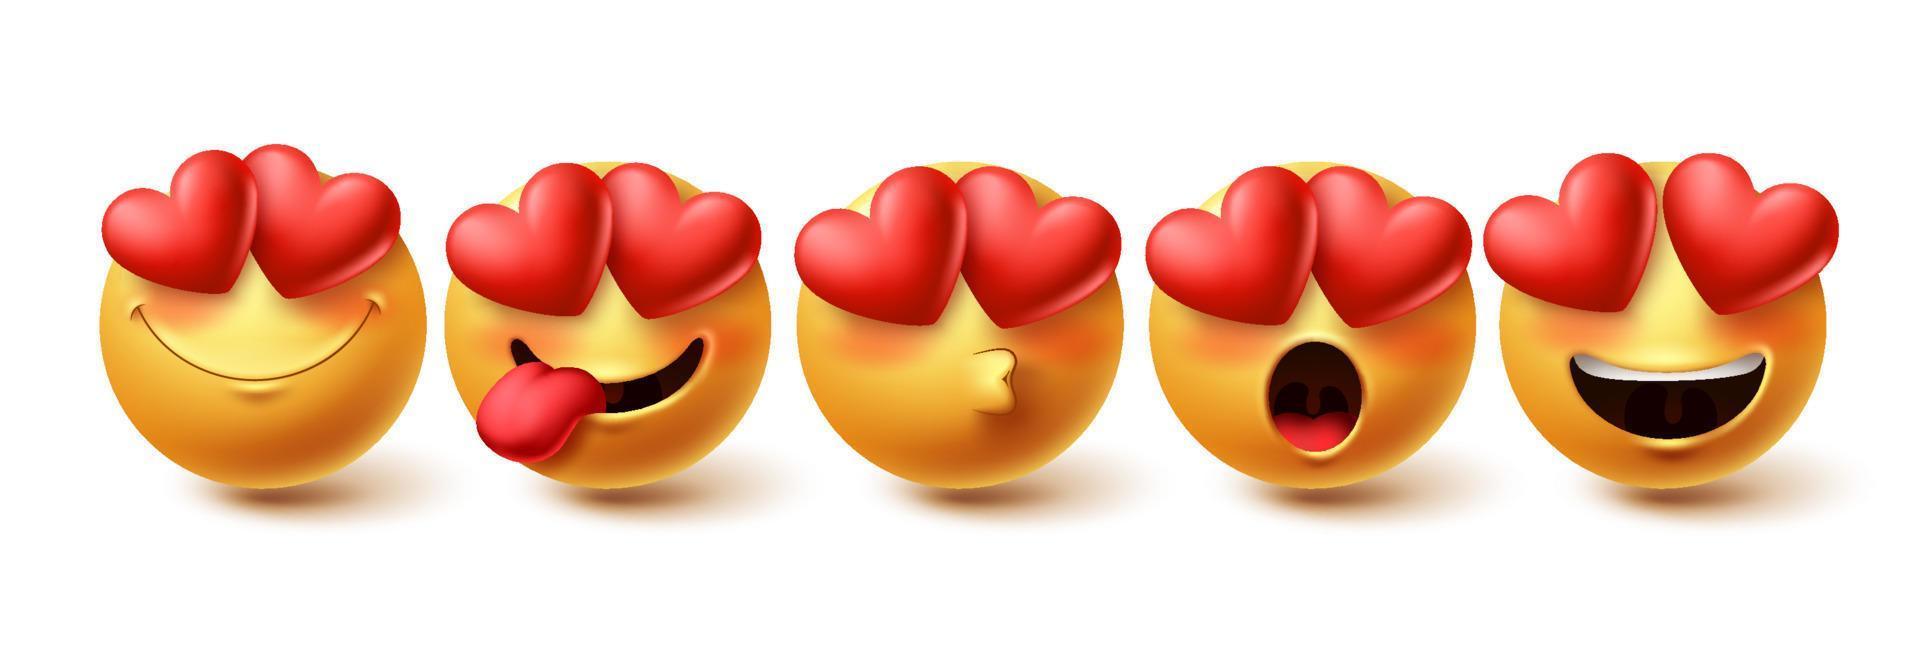 emoji in liefde gezicht vector set. gele emoji's in blije, blozende, kussende en verliefde gezichtsuitdrukkingen geïsoleerd op een witte achtergrond voor ontwerpelementen. vector illustratie